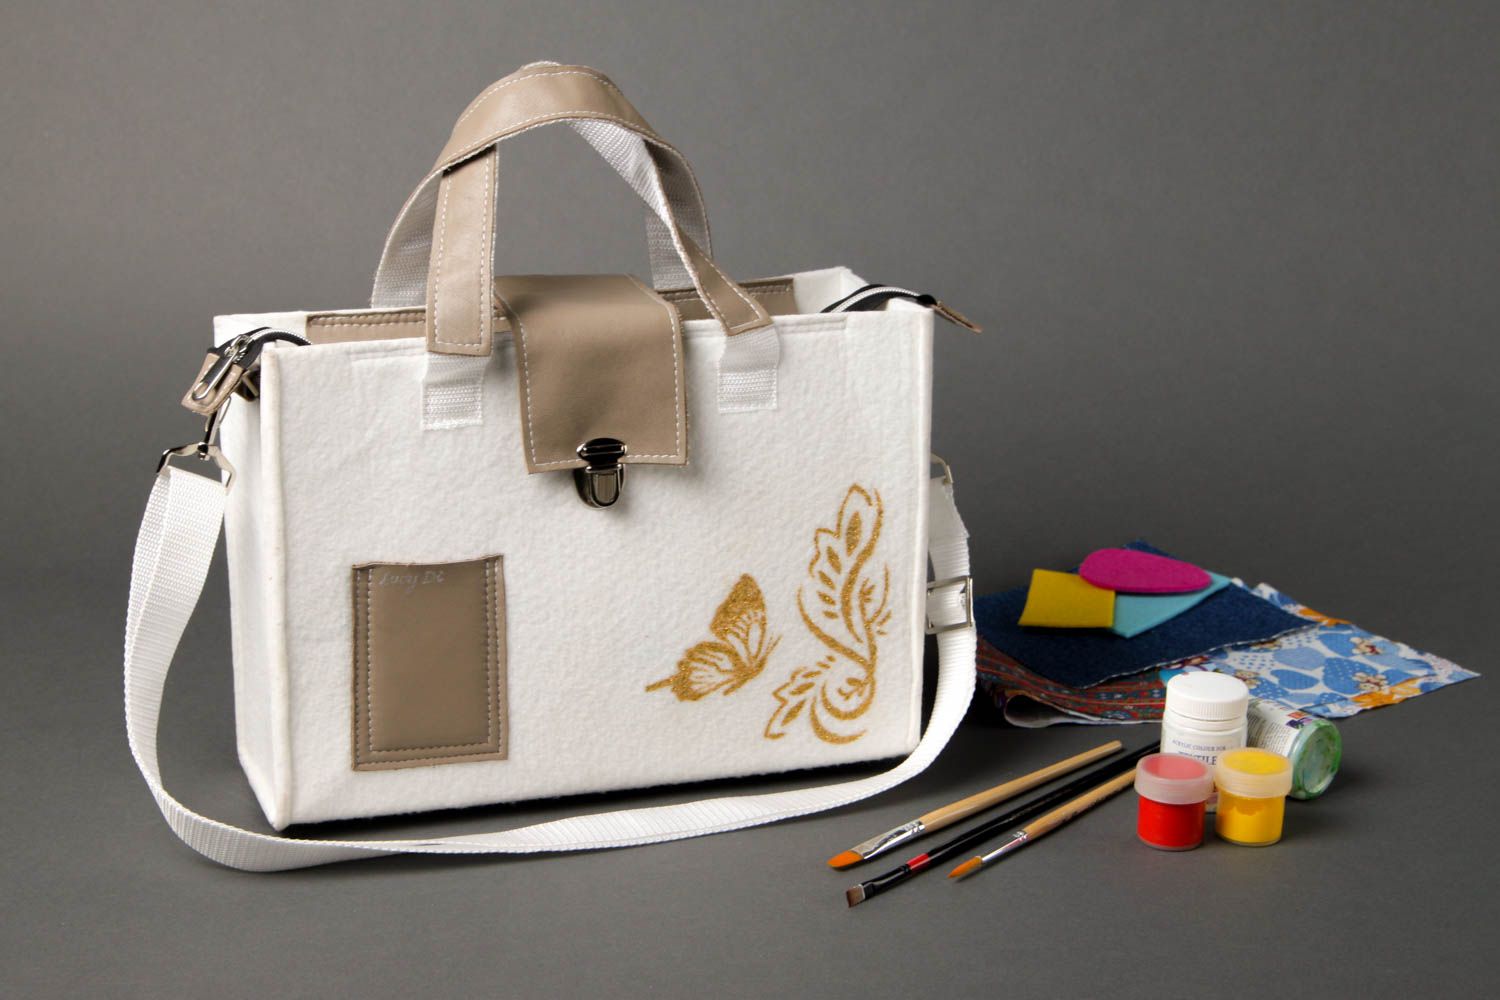 Сумка ручной работы женская сумка авторская тканевая сумка в деловом стиле фото 1